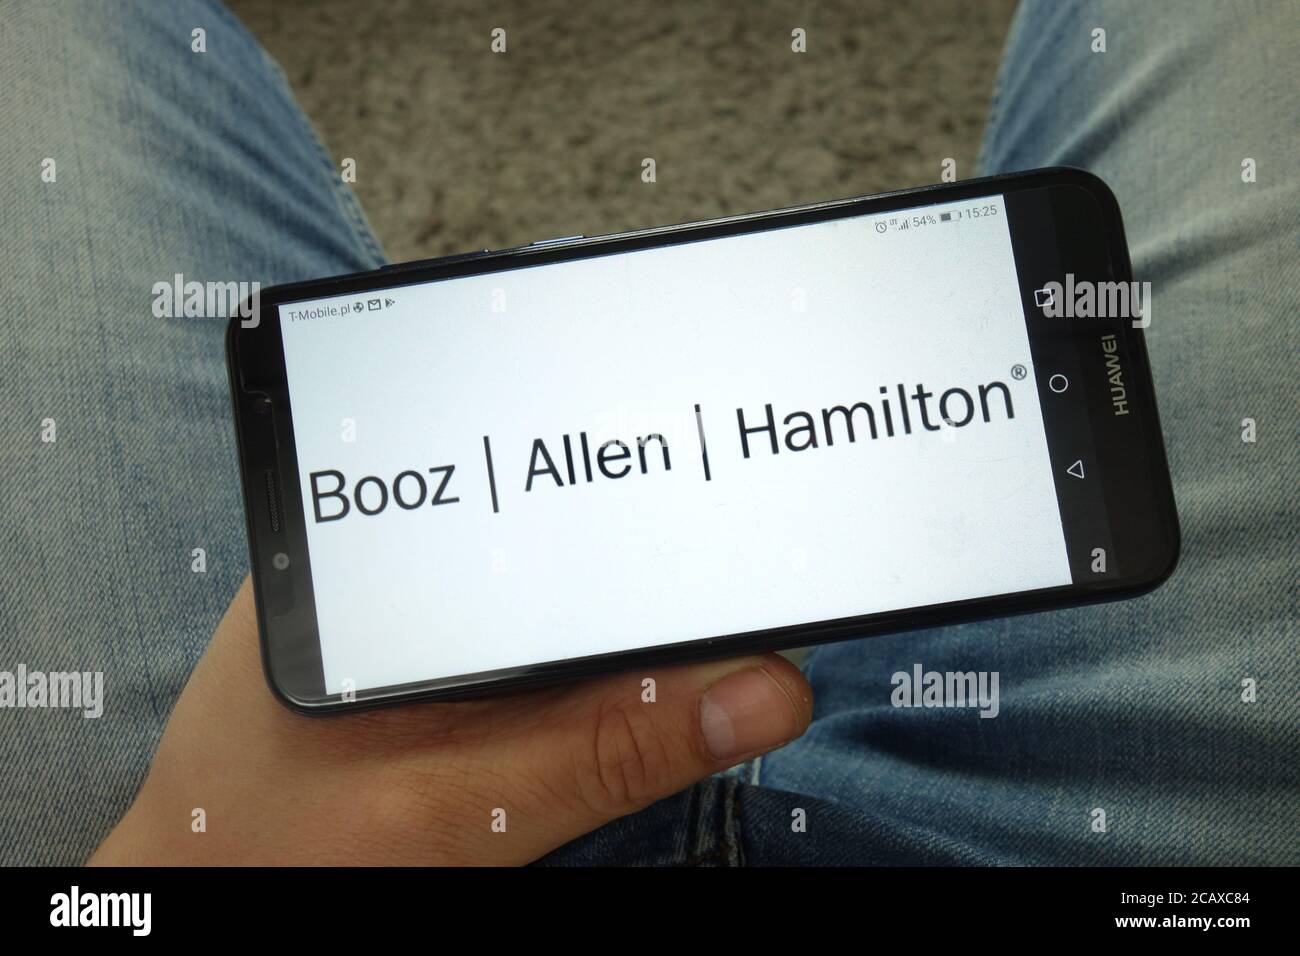 Homme tenant un smartphone avec le logo Booz Allen Hamilton Holding Corporation Banque D'Images